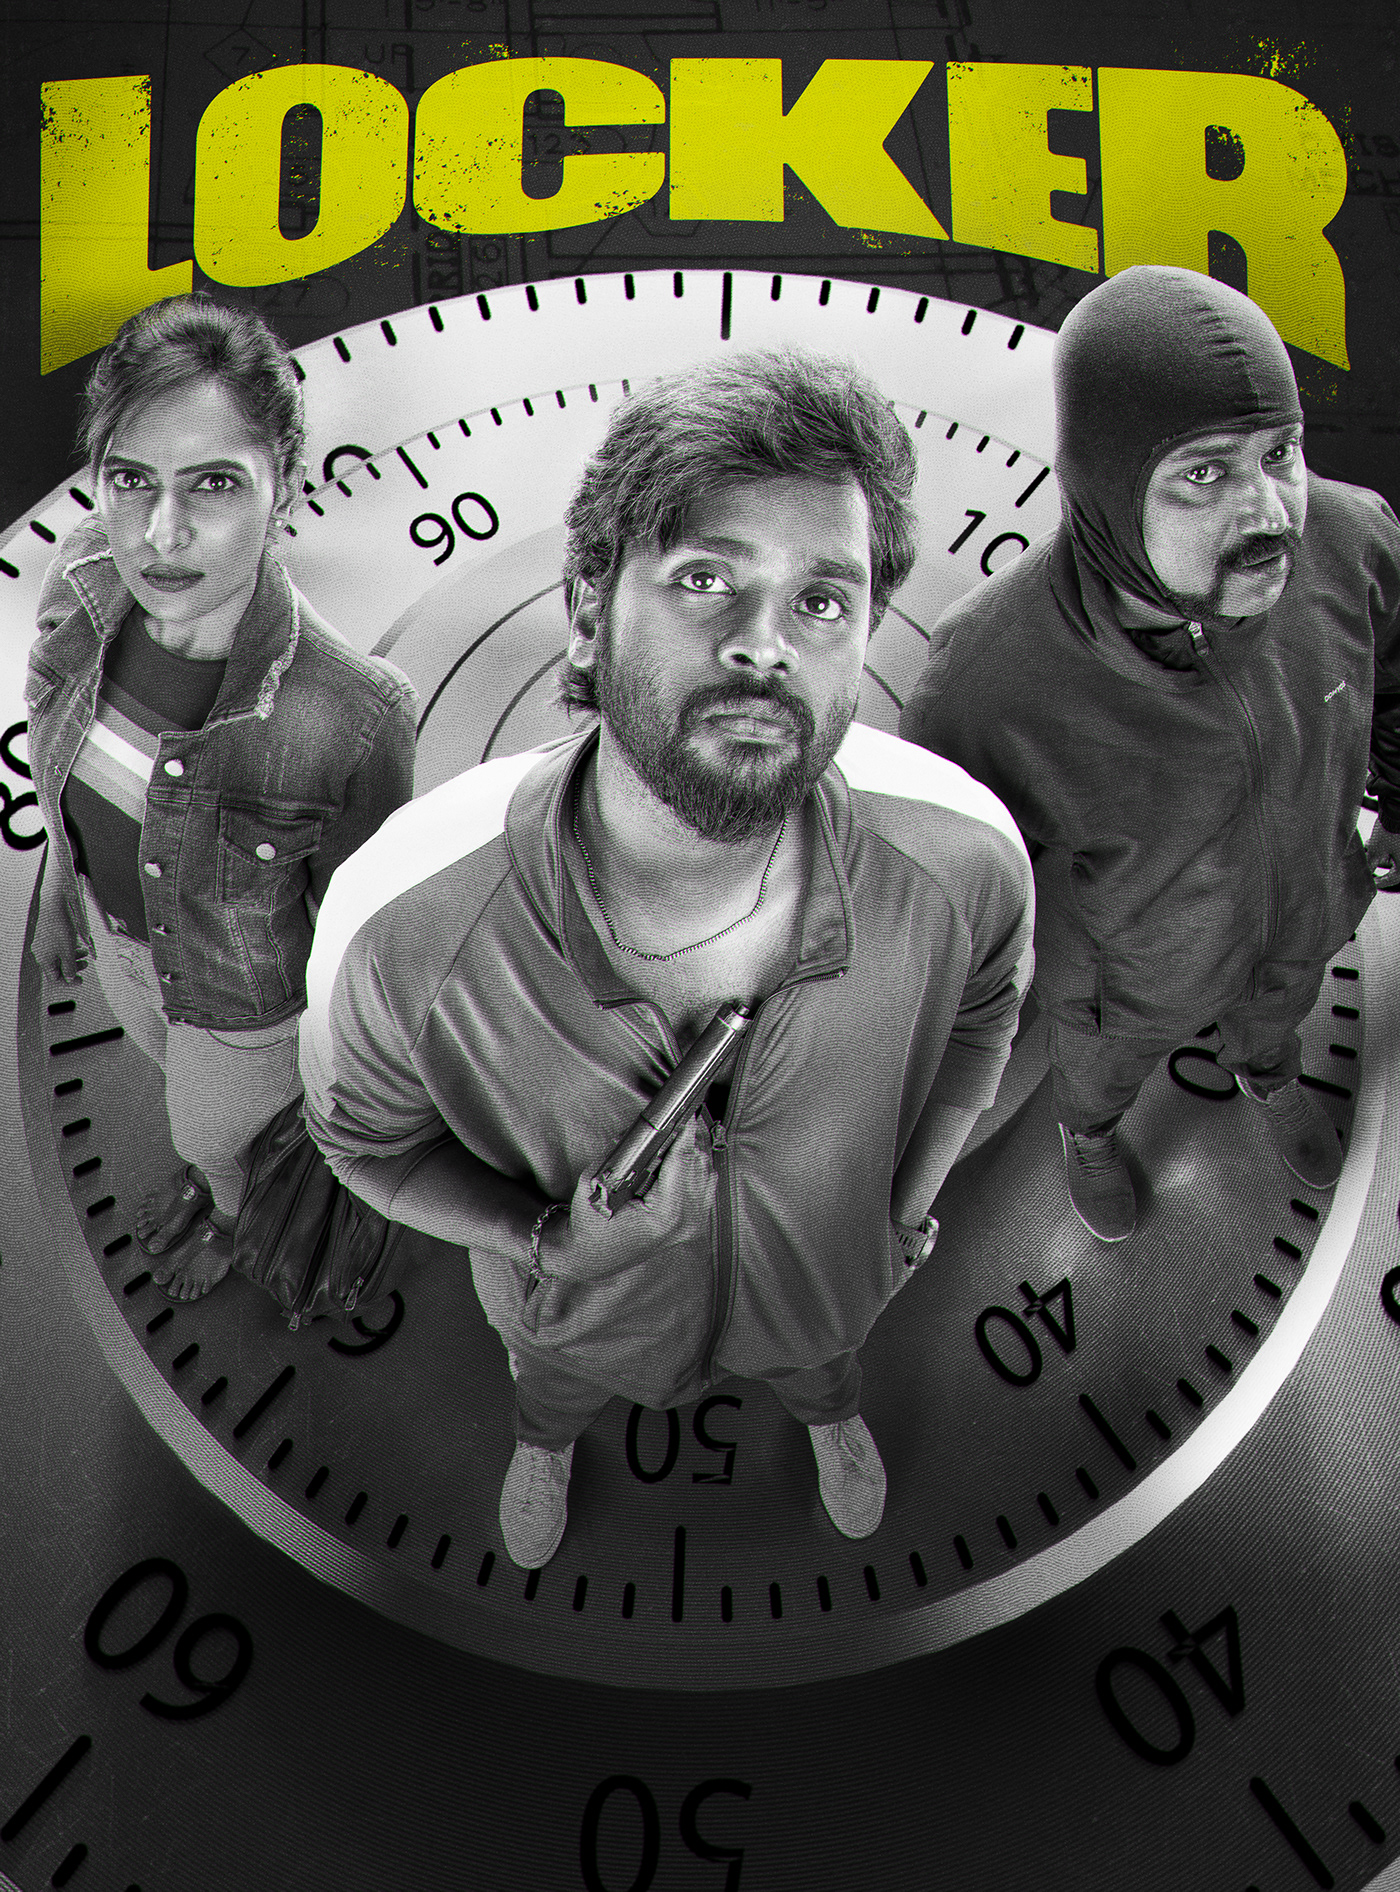 tamil chennai movie poster keyart